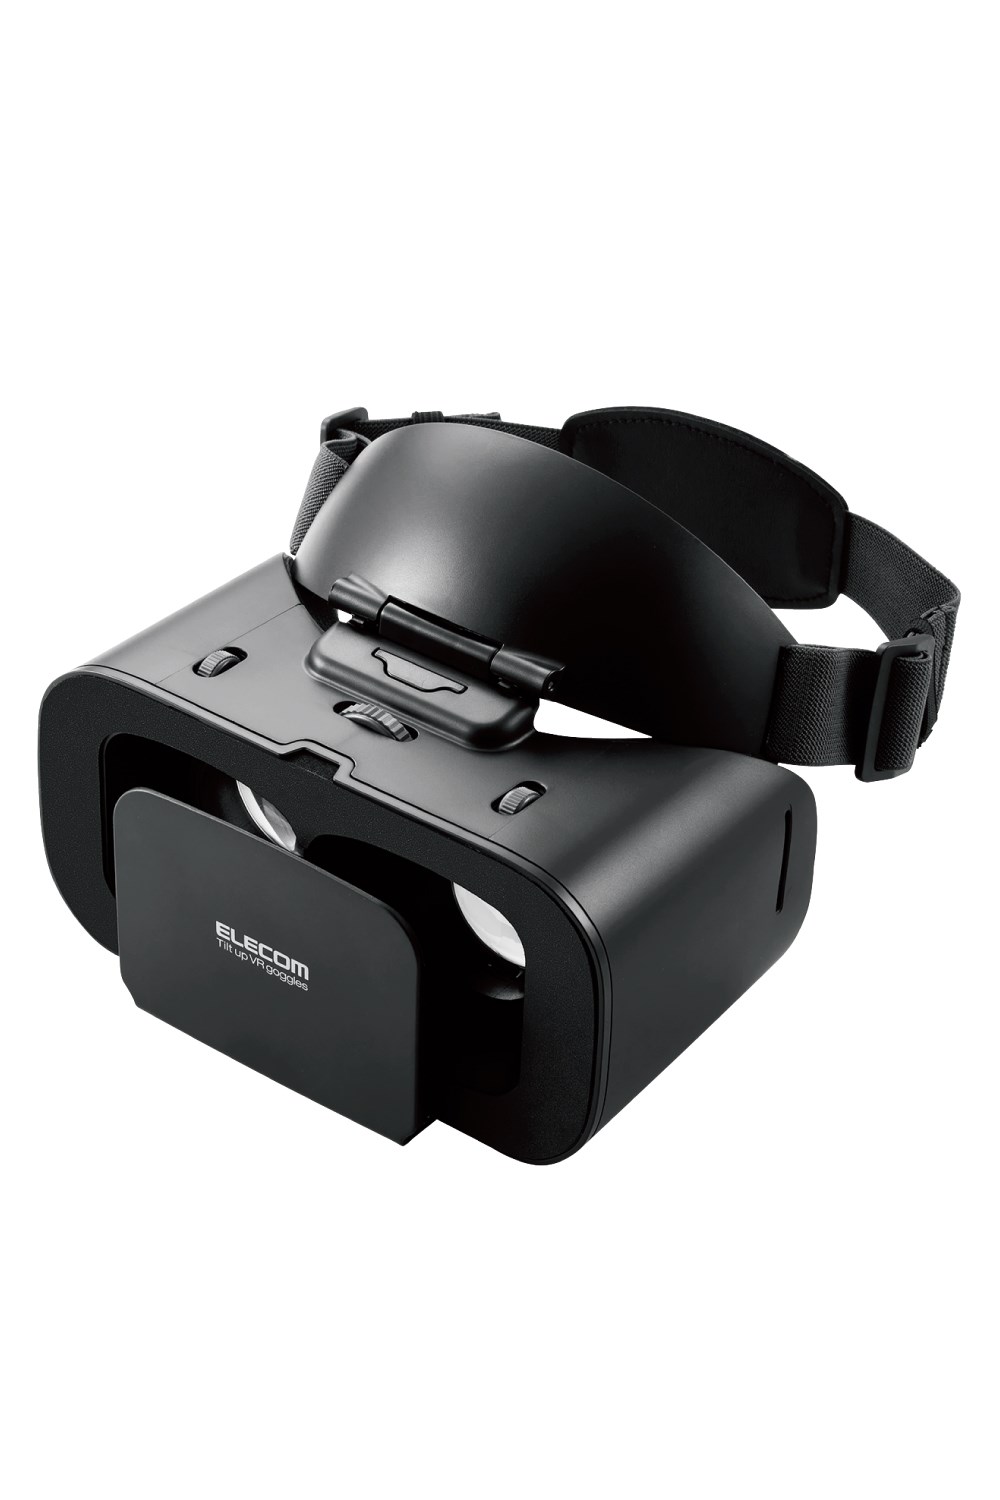 ELECOM（エレコム） VRゴーグル スマホ用 VR ヘッドマウントディスプレイ 片手で楽ちん チルトアップ メガネ装着可 【 4.7~7.0インチ iPhone Android スマホ 各種対応 】 ブラック VRG-TL01BK